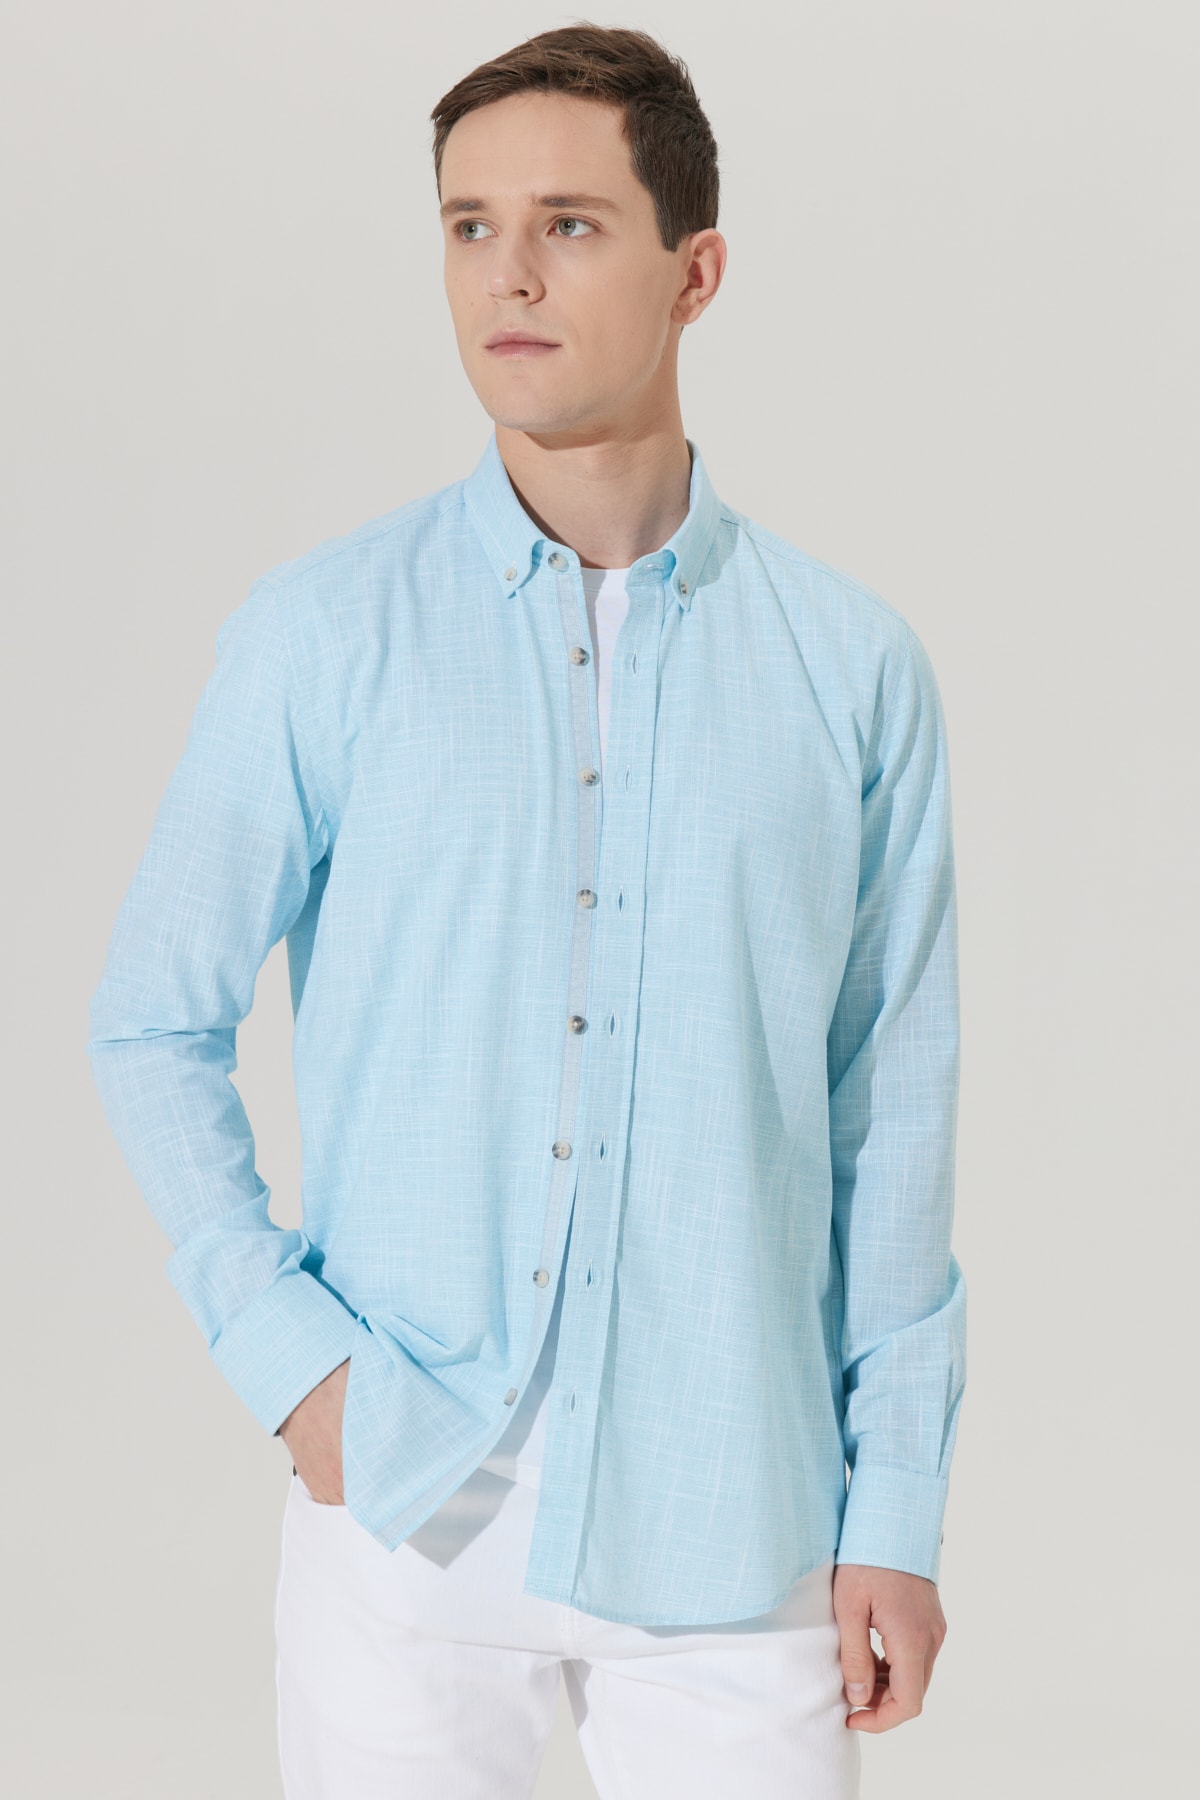 Levně ALTINYILDIZ CLASSICS Men's Turquoise Slim Fit Slim Fit Buttoned Collar Linen-Looking 100% Cotton Flared Shirt.